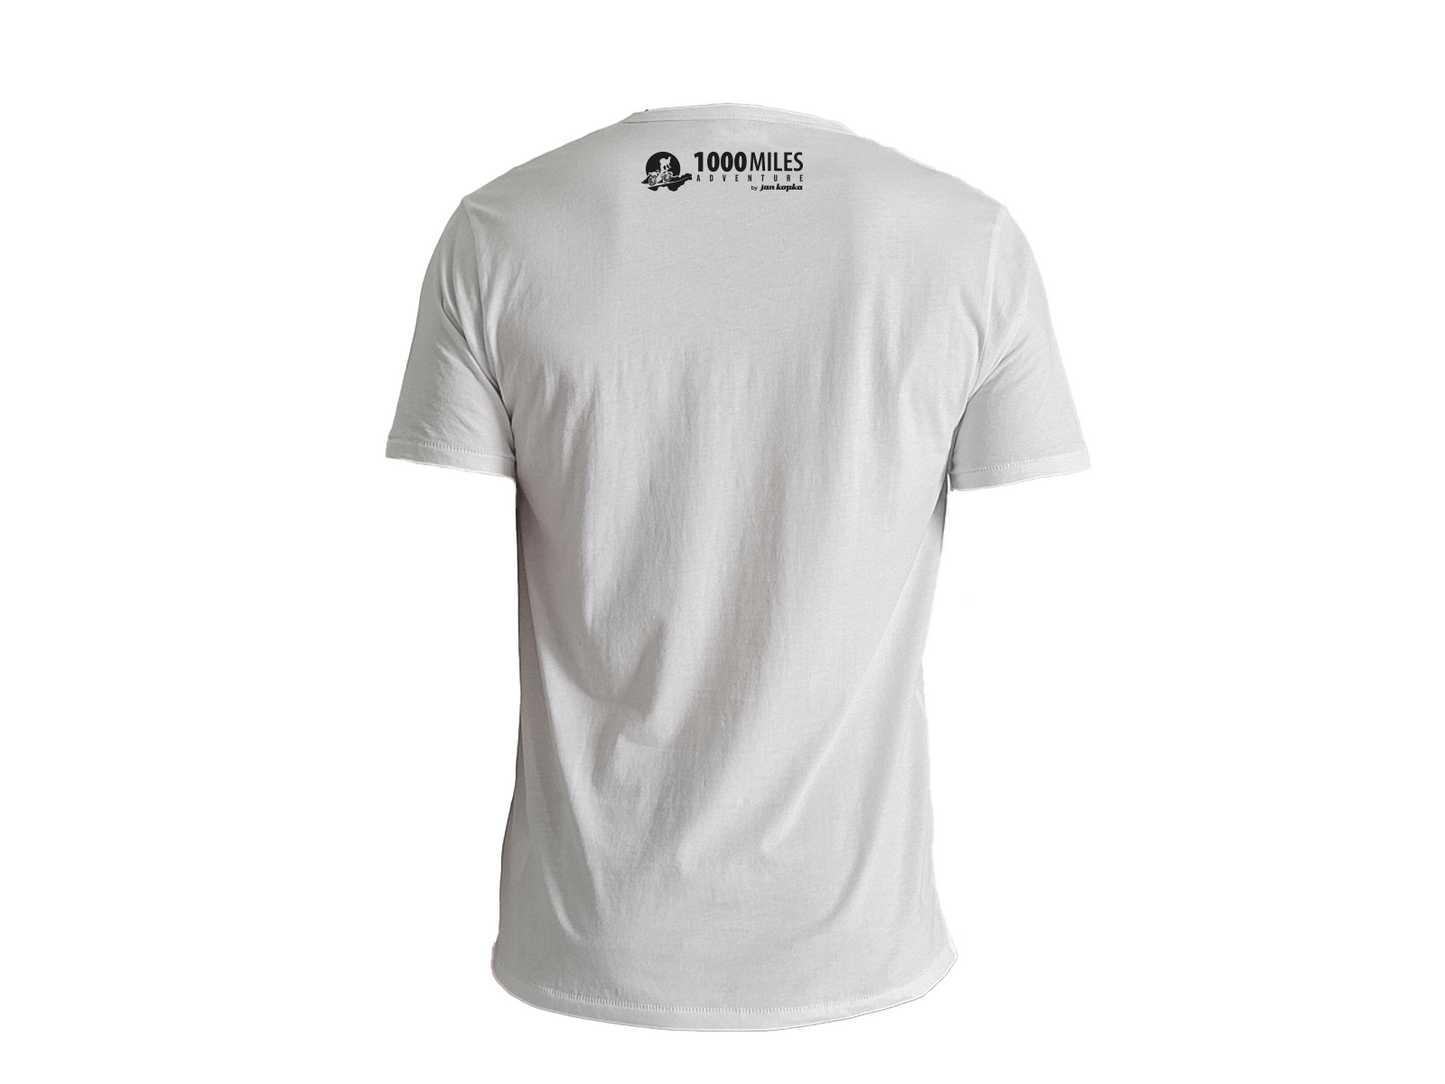 Bílé tričko "1000Miles adventure" s obrázkem zepředu